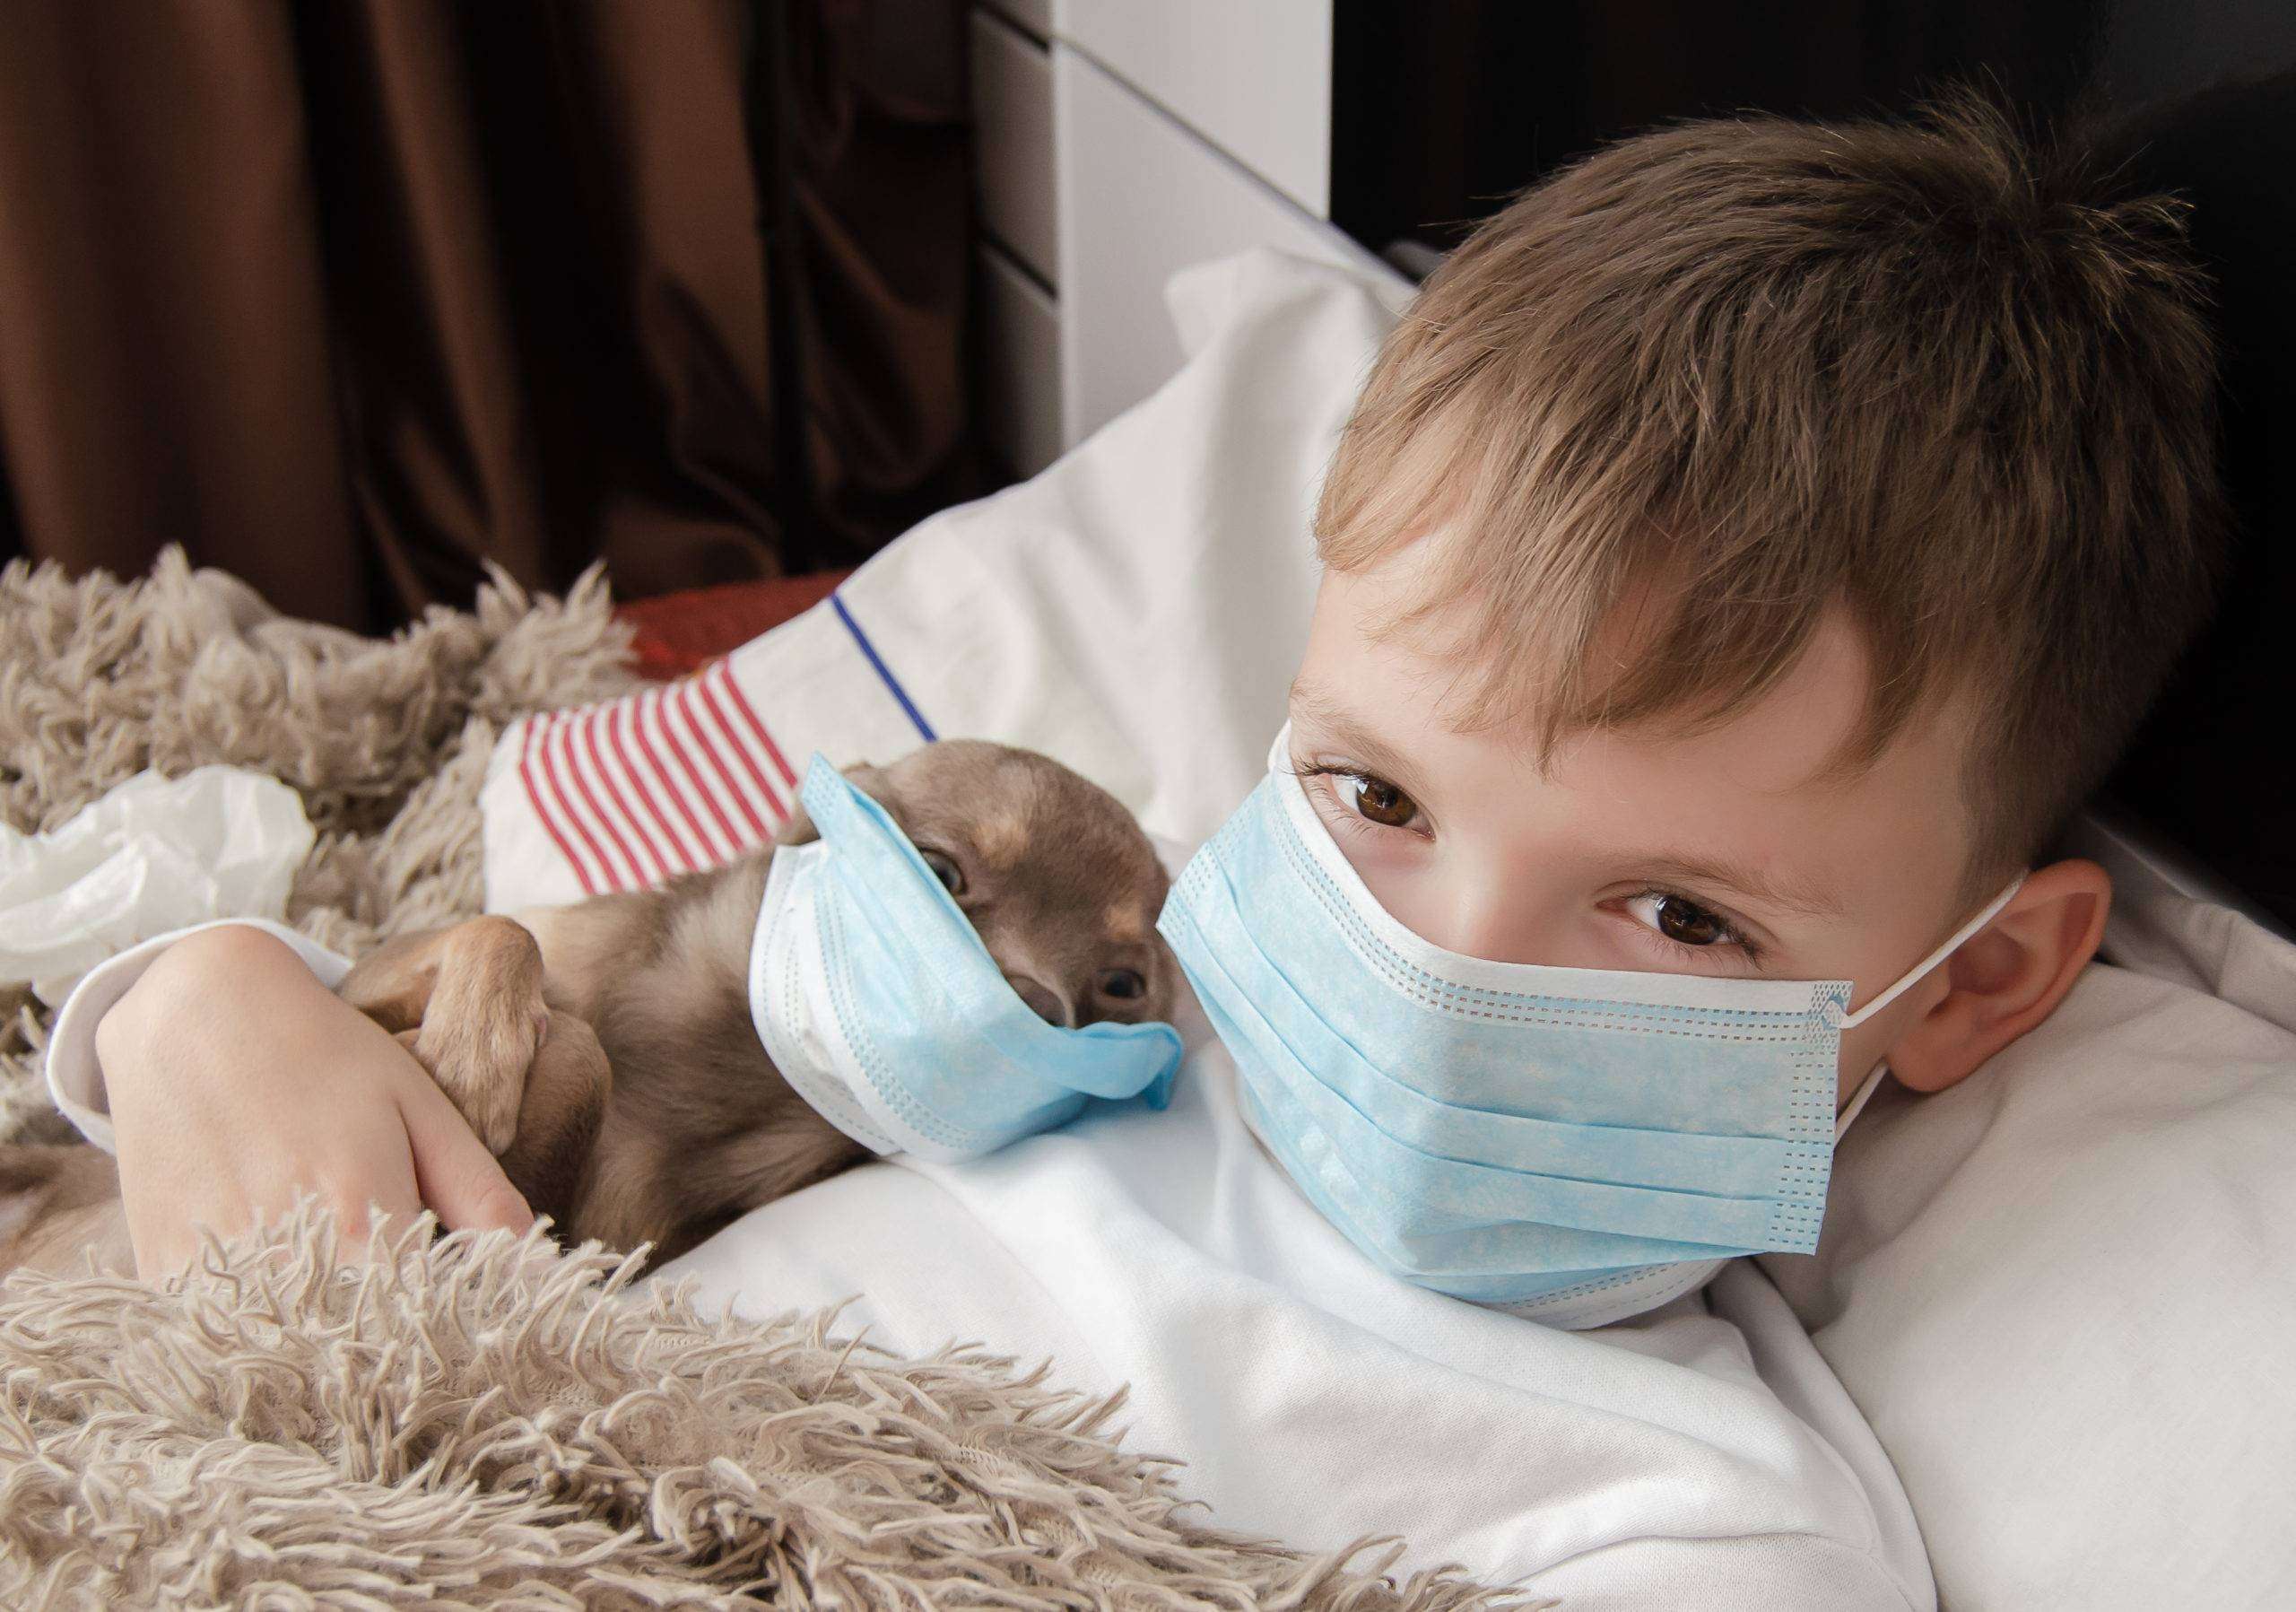 कोरोना अपडेट: नए शोध का दावा बच्चों की श्वांस नली में हफ्तों तक जिंदा रह सकता है कोरोना वायरस